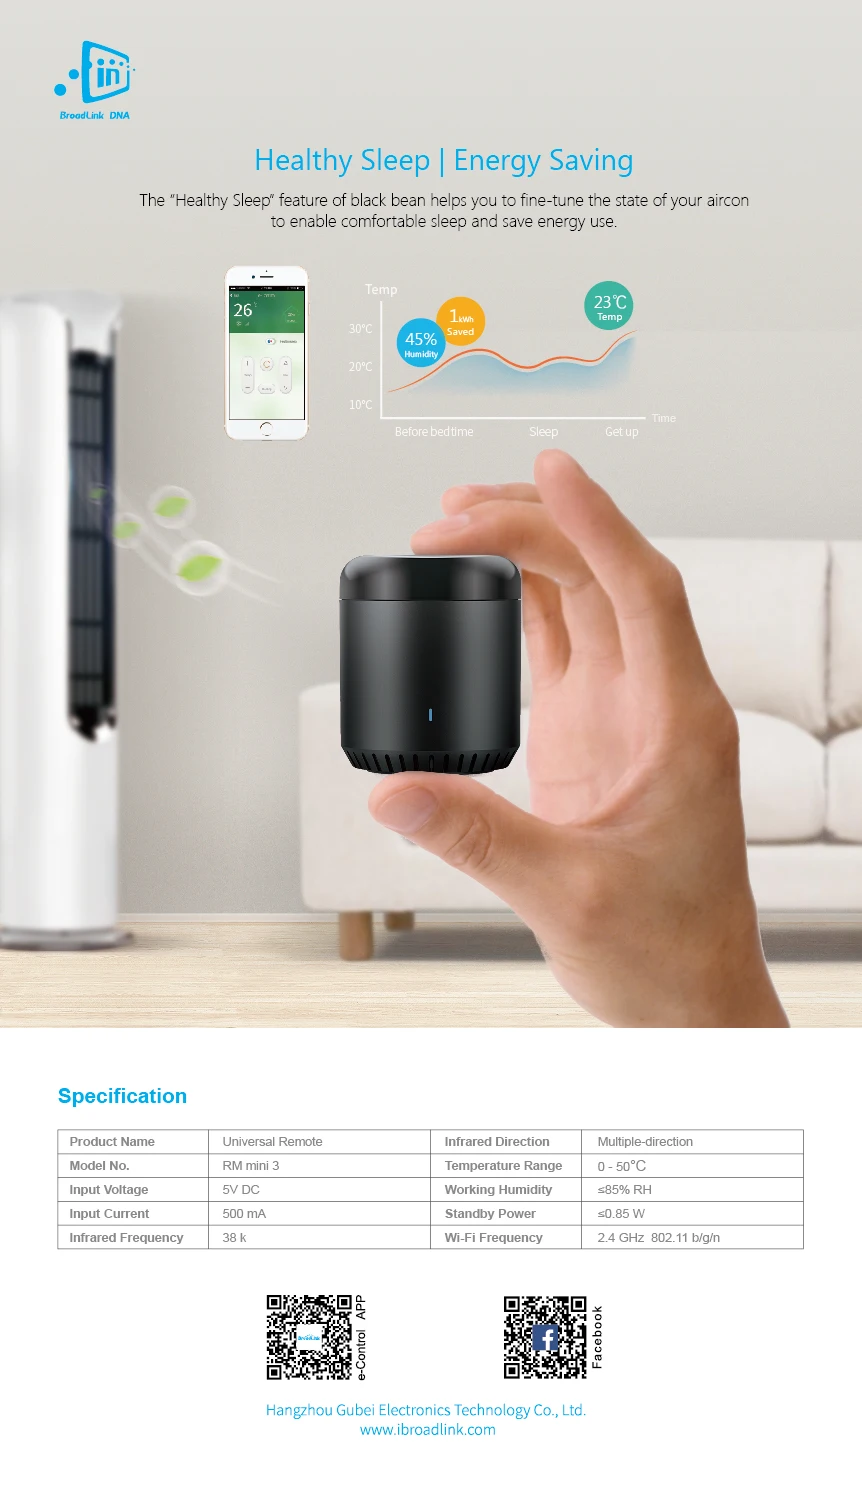 4 Пакет Broadlink RM mini 3 универсальный пульт дистанционного управления для умного дома Автоматизация пульт дистанционного управления из любого места Голосовое управление Google Home